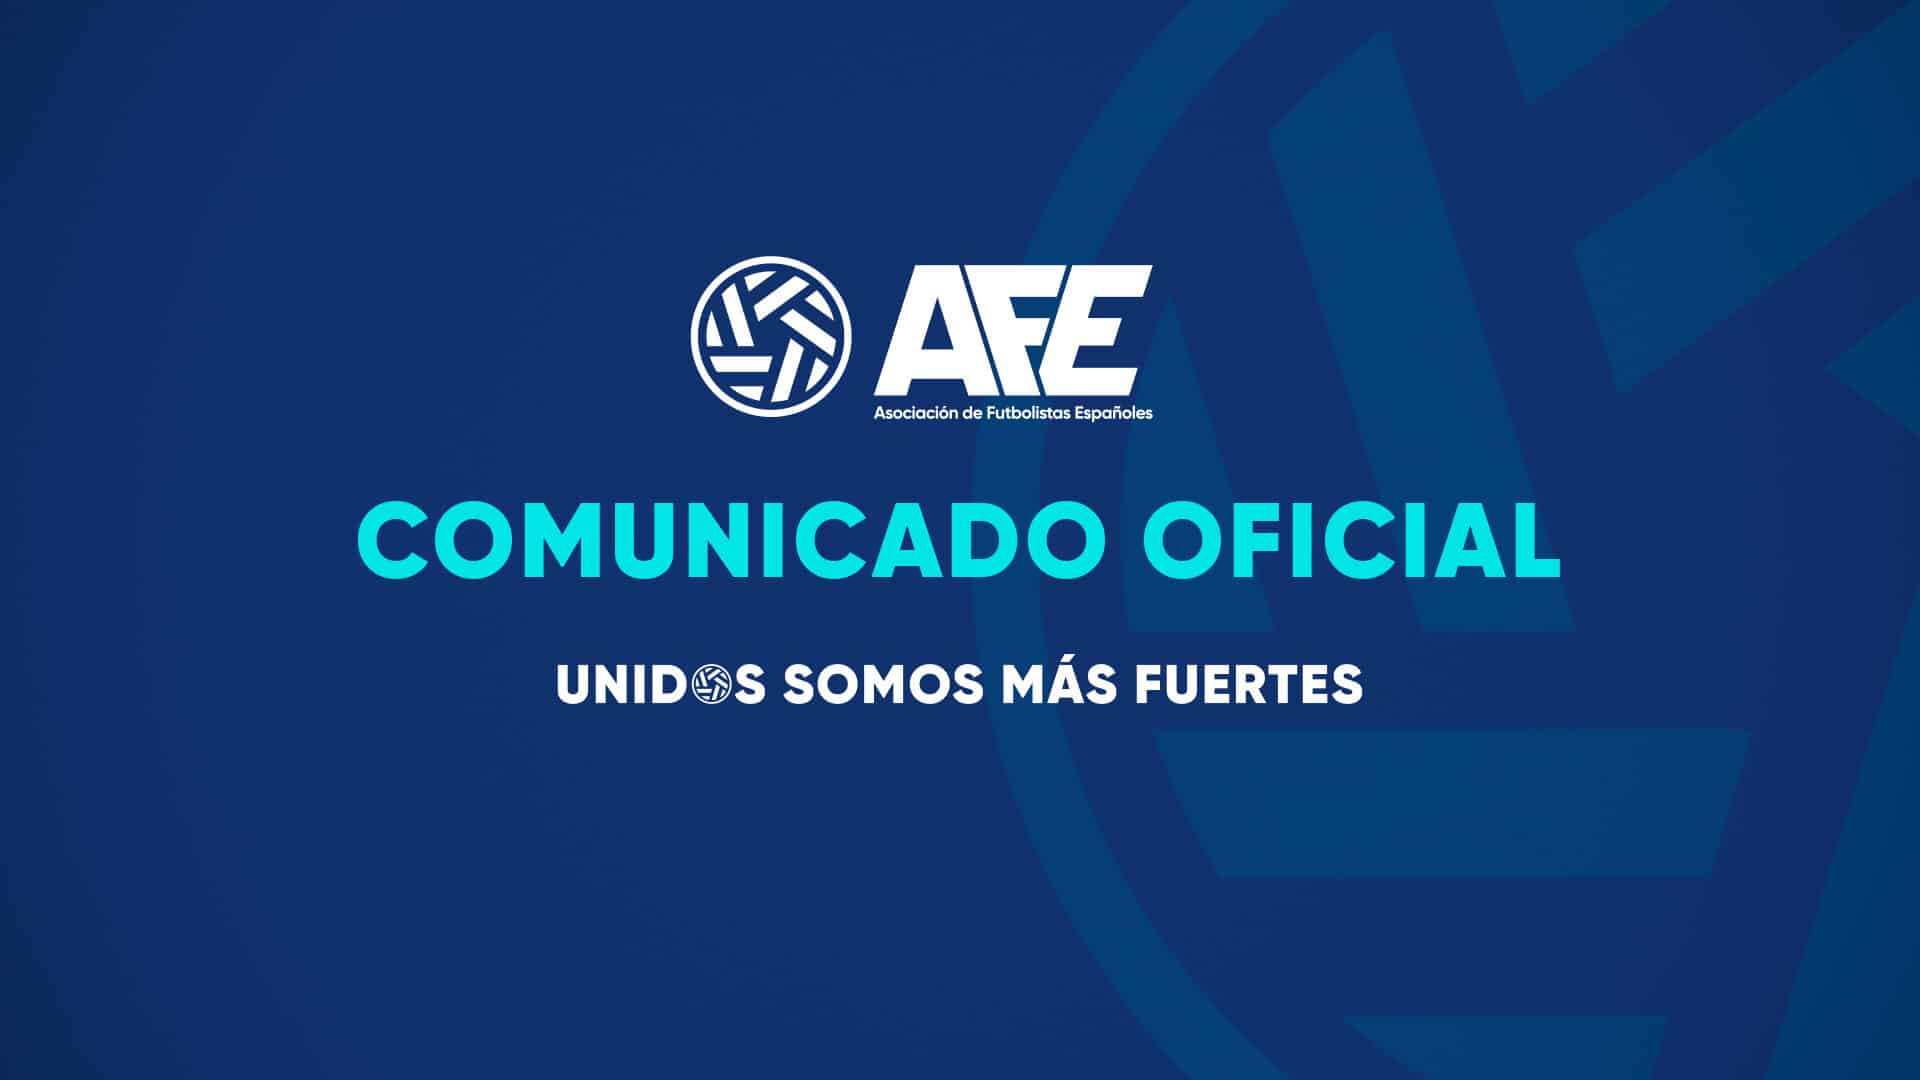 Comunicado oficial AFE